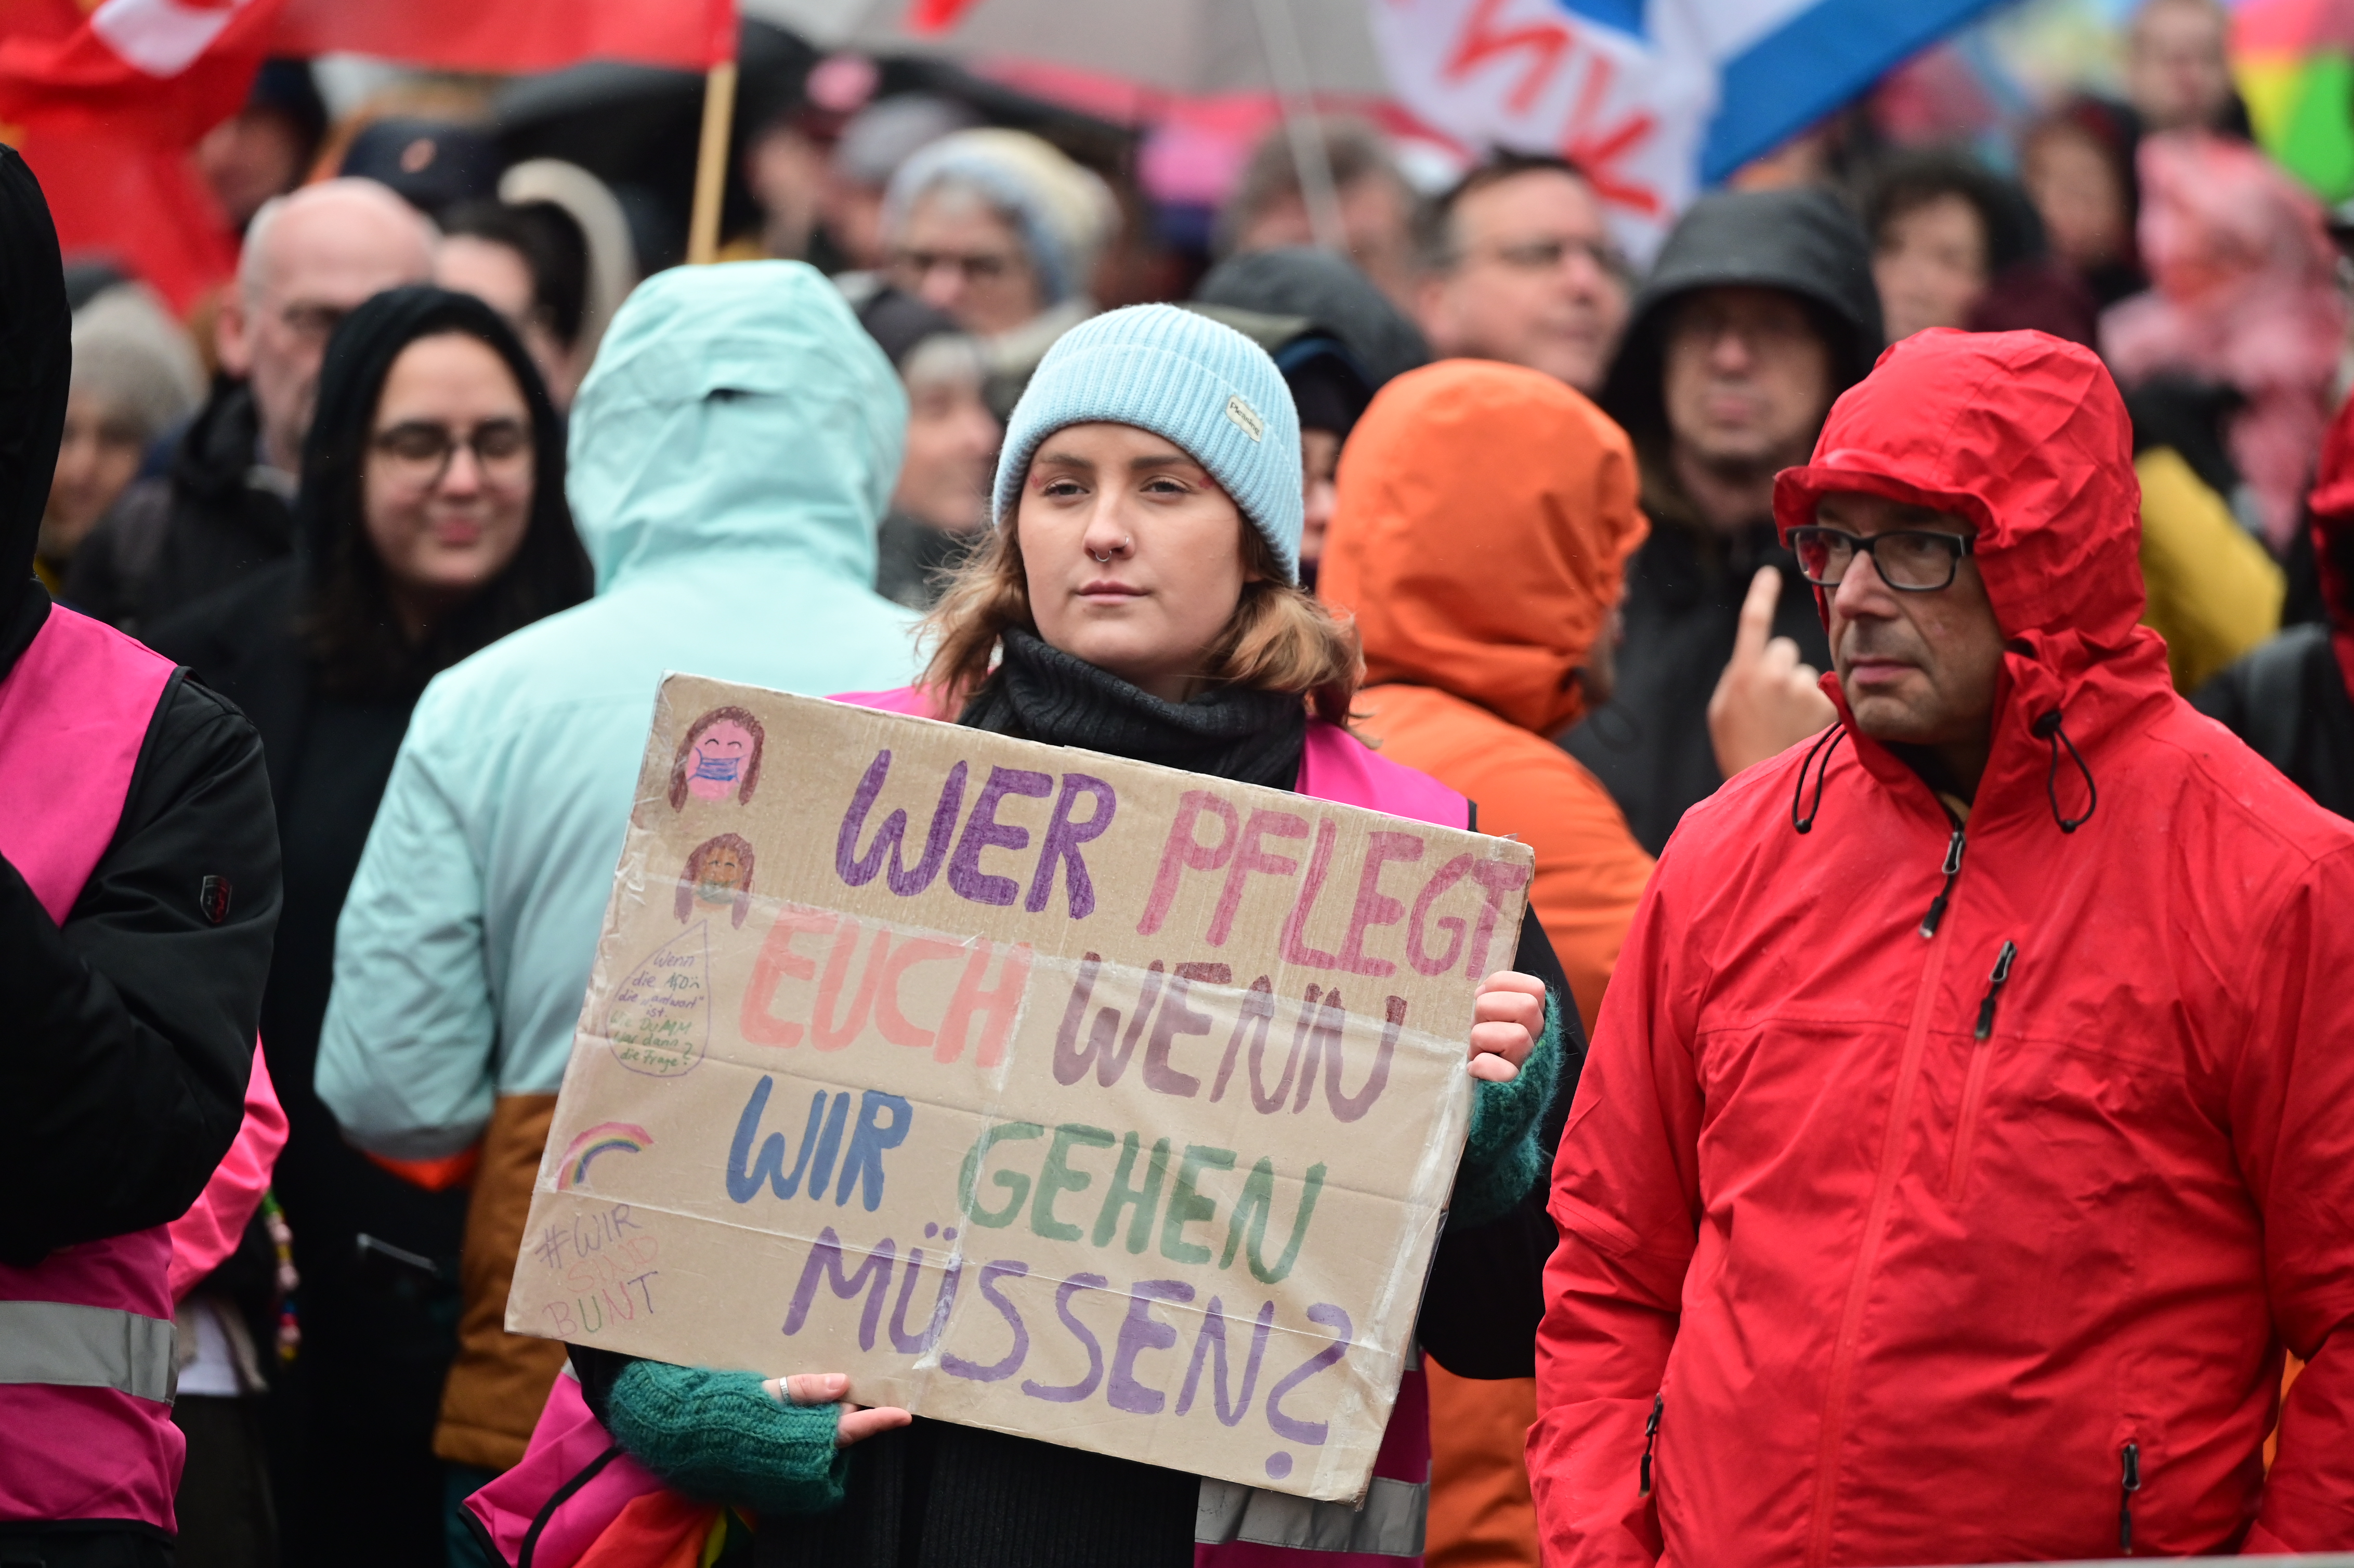 Eine Frau hält in Mitten einer Demonstration ein selbstgestaltetes Plakat in den Händen. Auf dem Plakat steht geschrieben: "WER PFLEGT EUCH WENN WIR GEHEN MÜSSEN?"